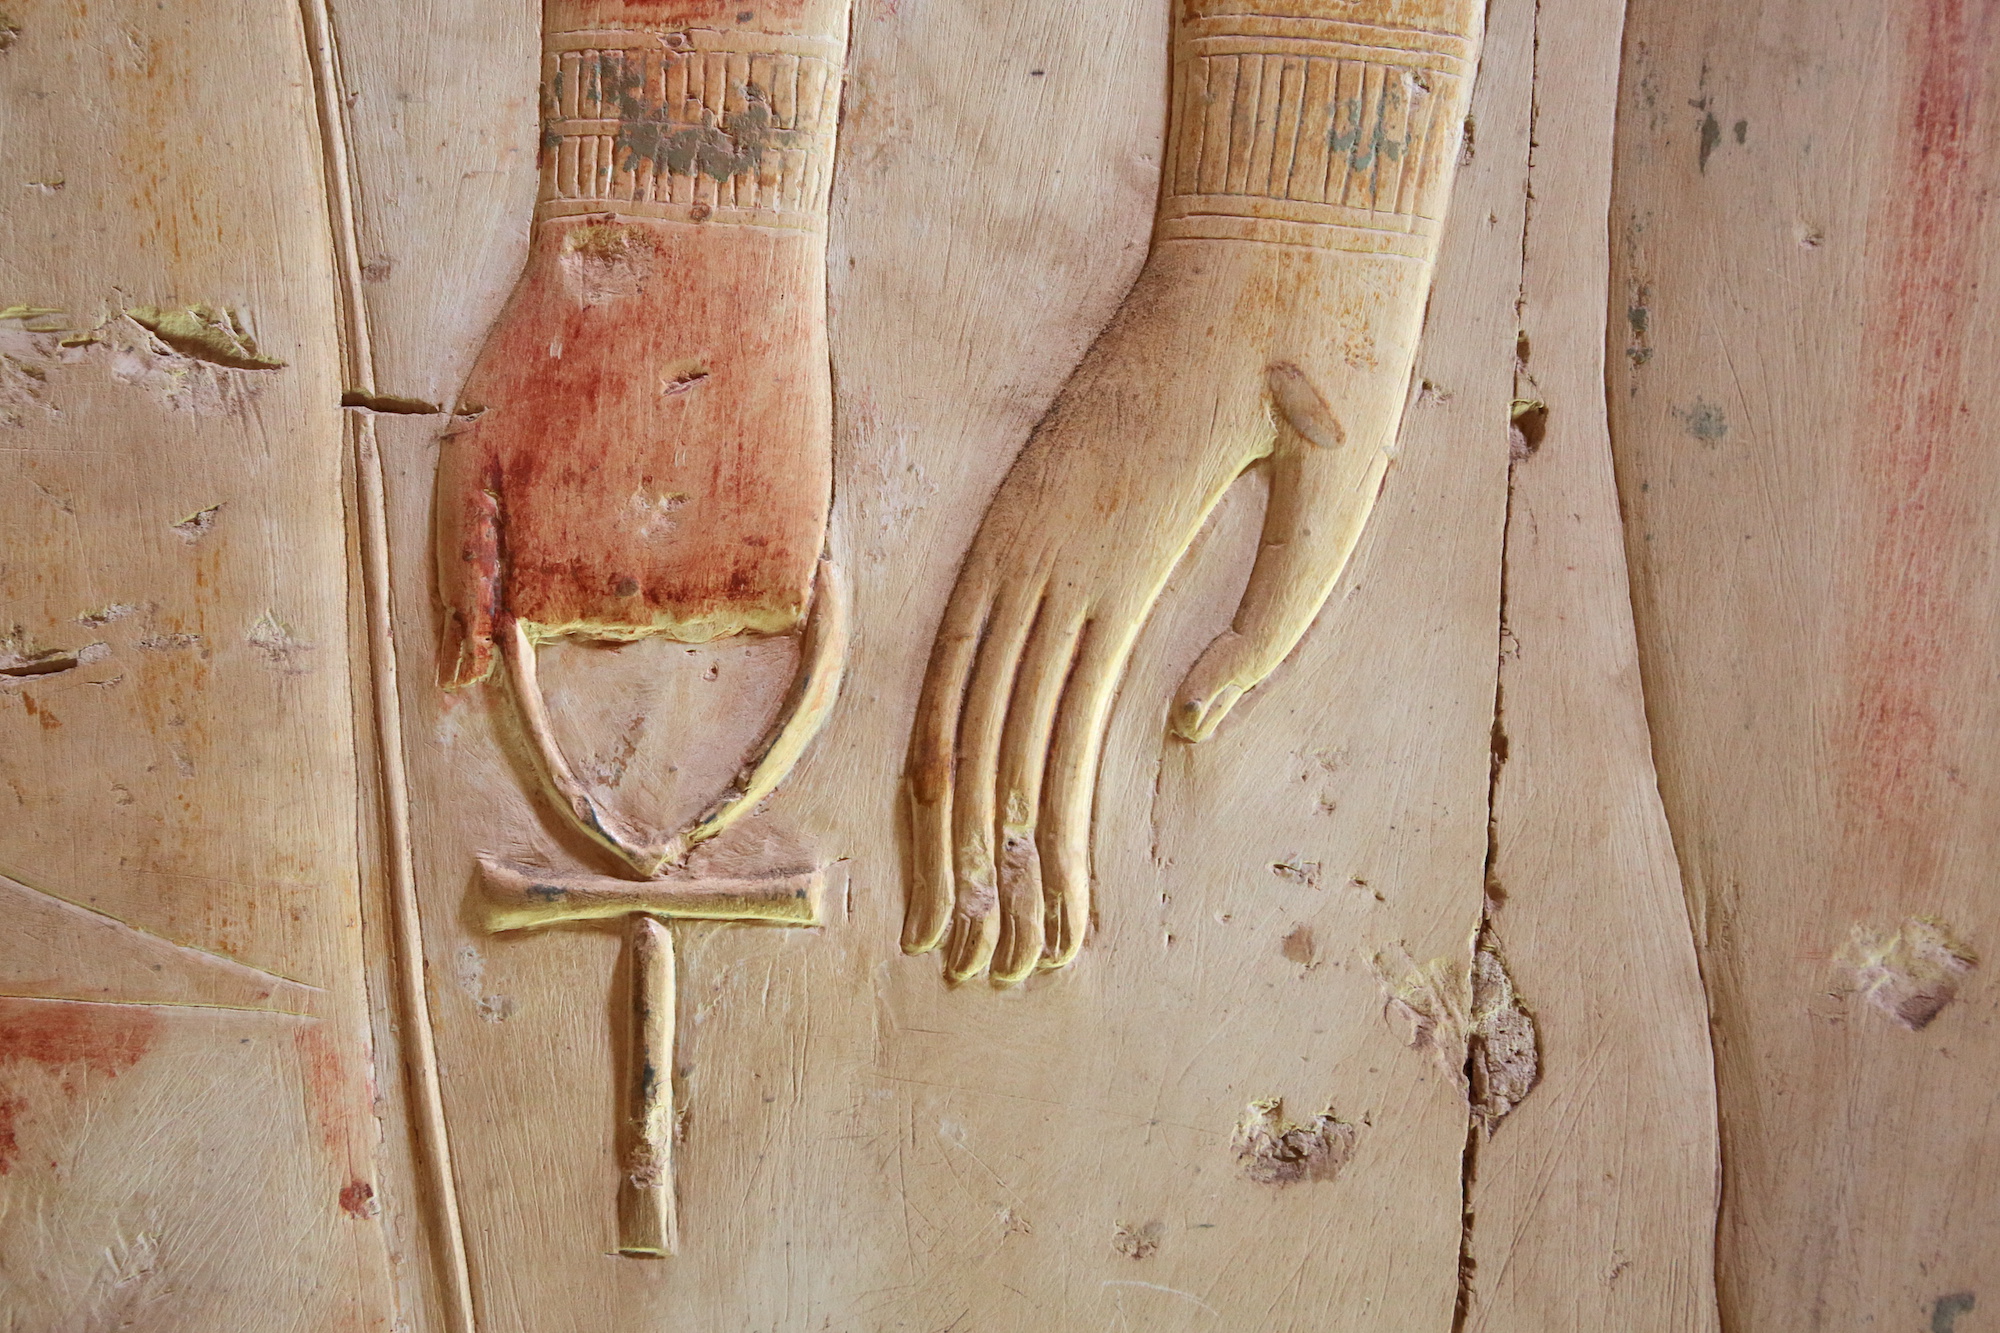 Hand holding an ankh cross